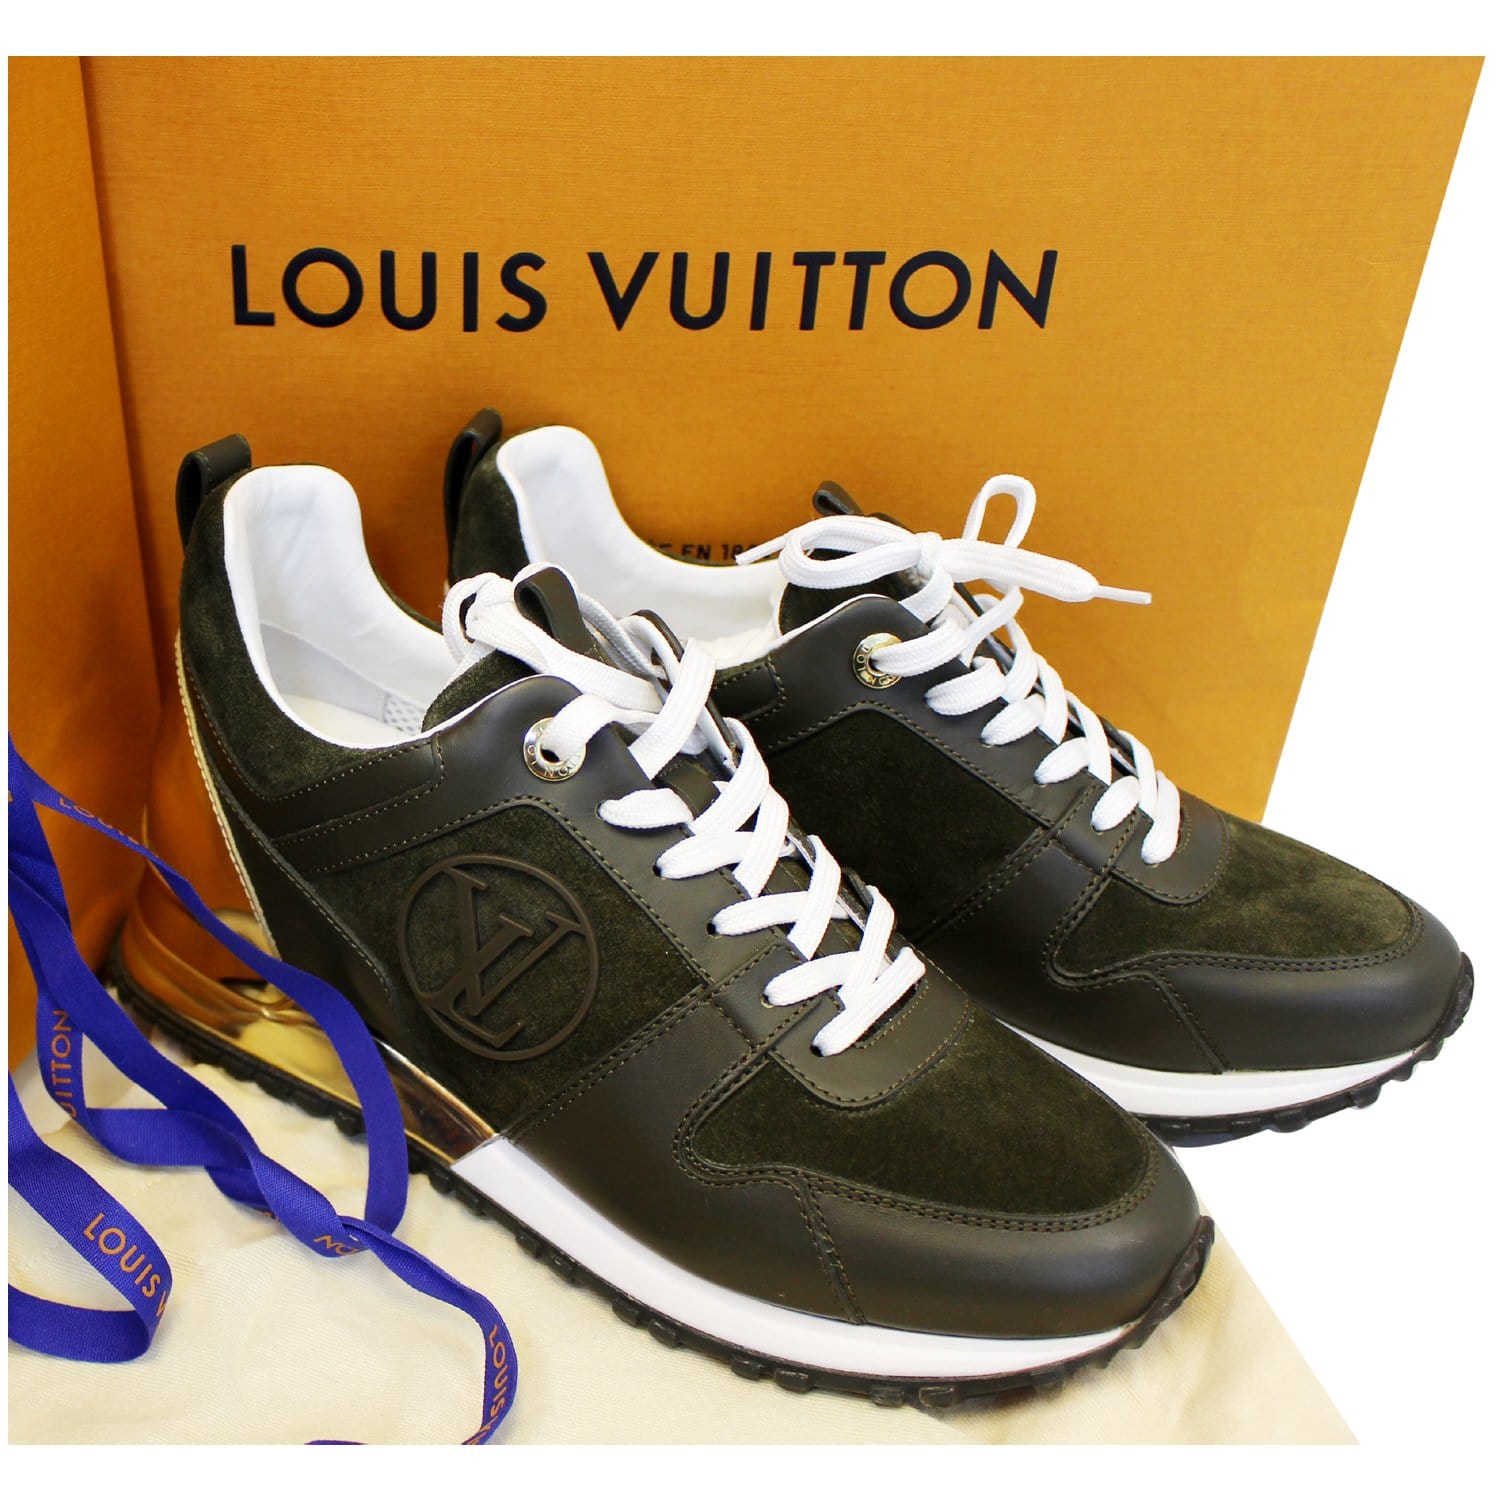 DETAILS - LOUIS VUITTON Sneaker